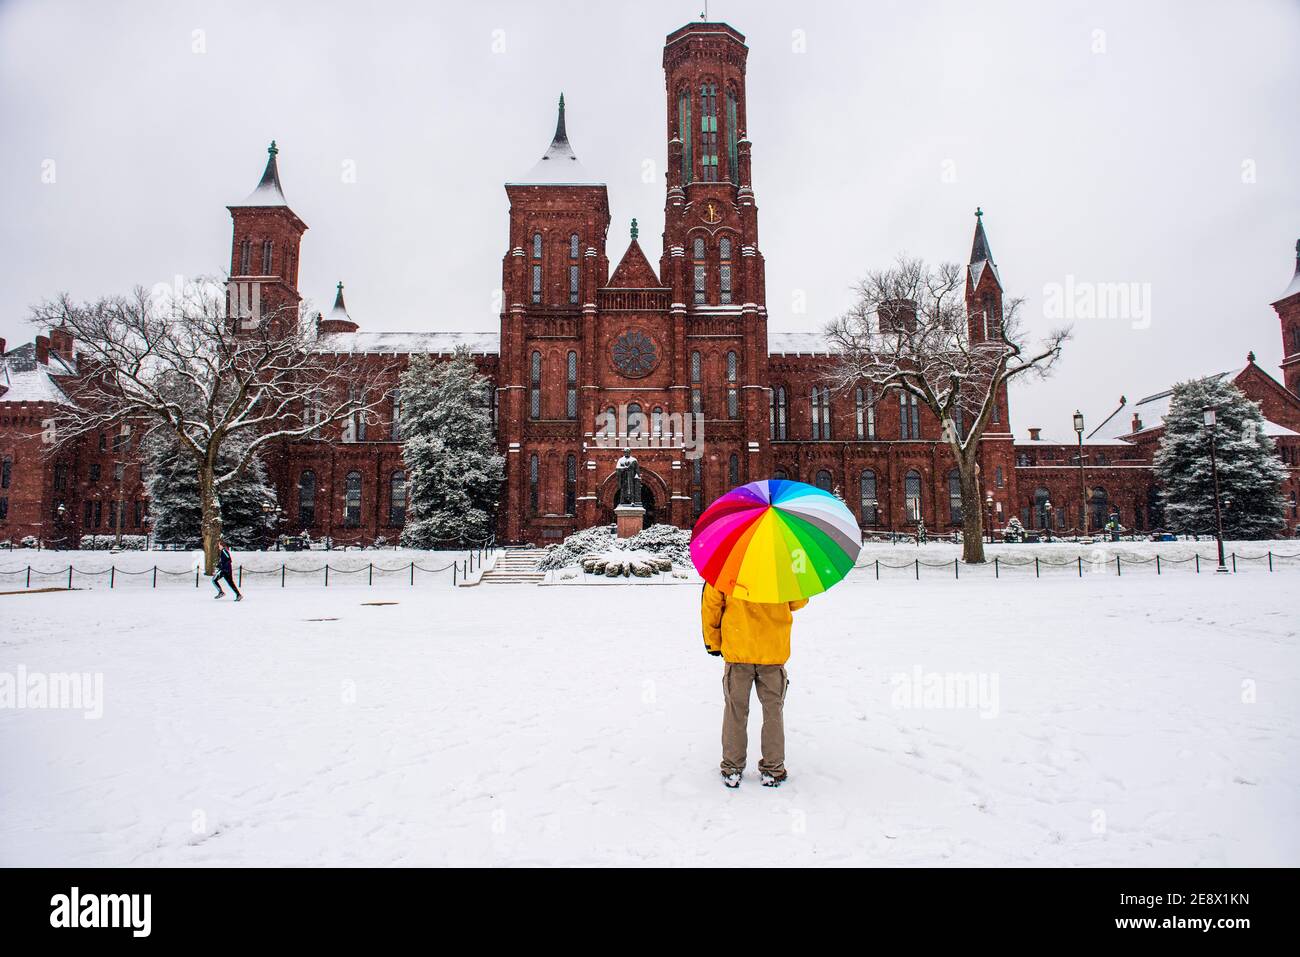 Un uomo con un ombrello colorato si ferma di fronte allo Smithsonian Institution Building, conosciuto anche come il Castello, durante una giornata innevata a Washington, D.C. Foto Stock